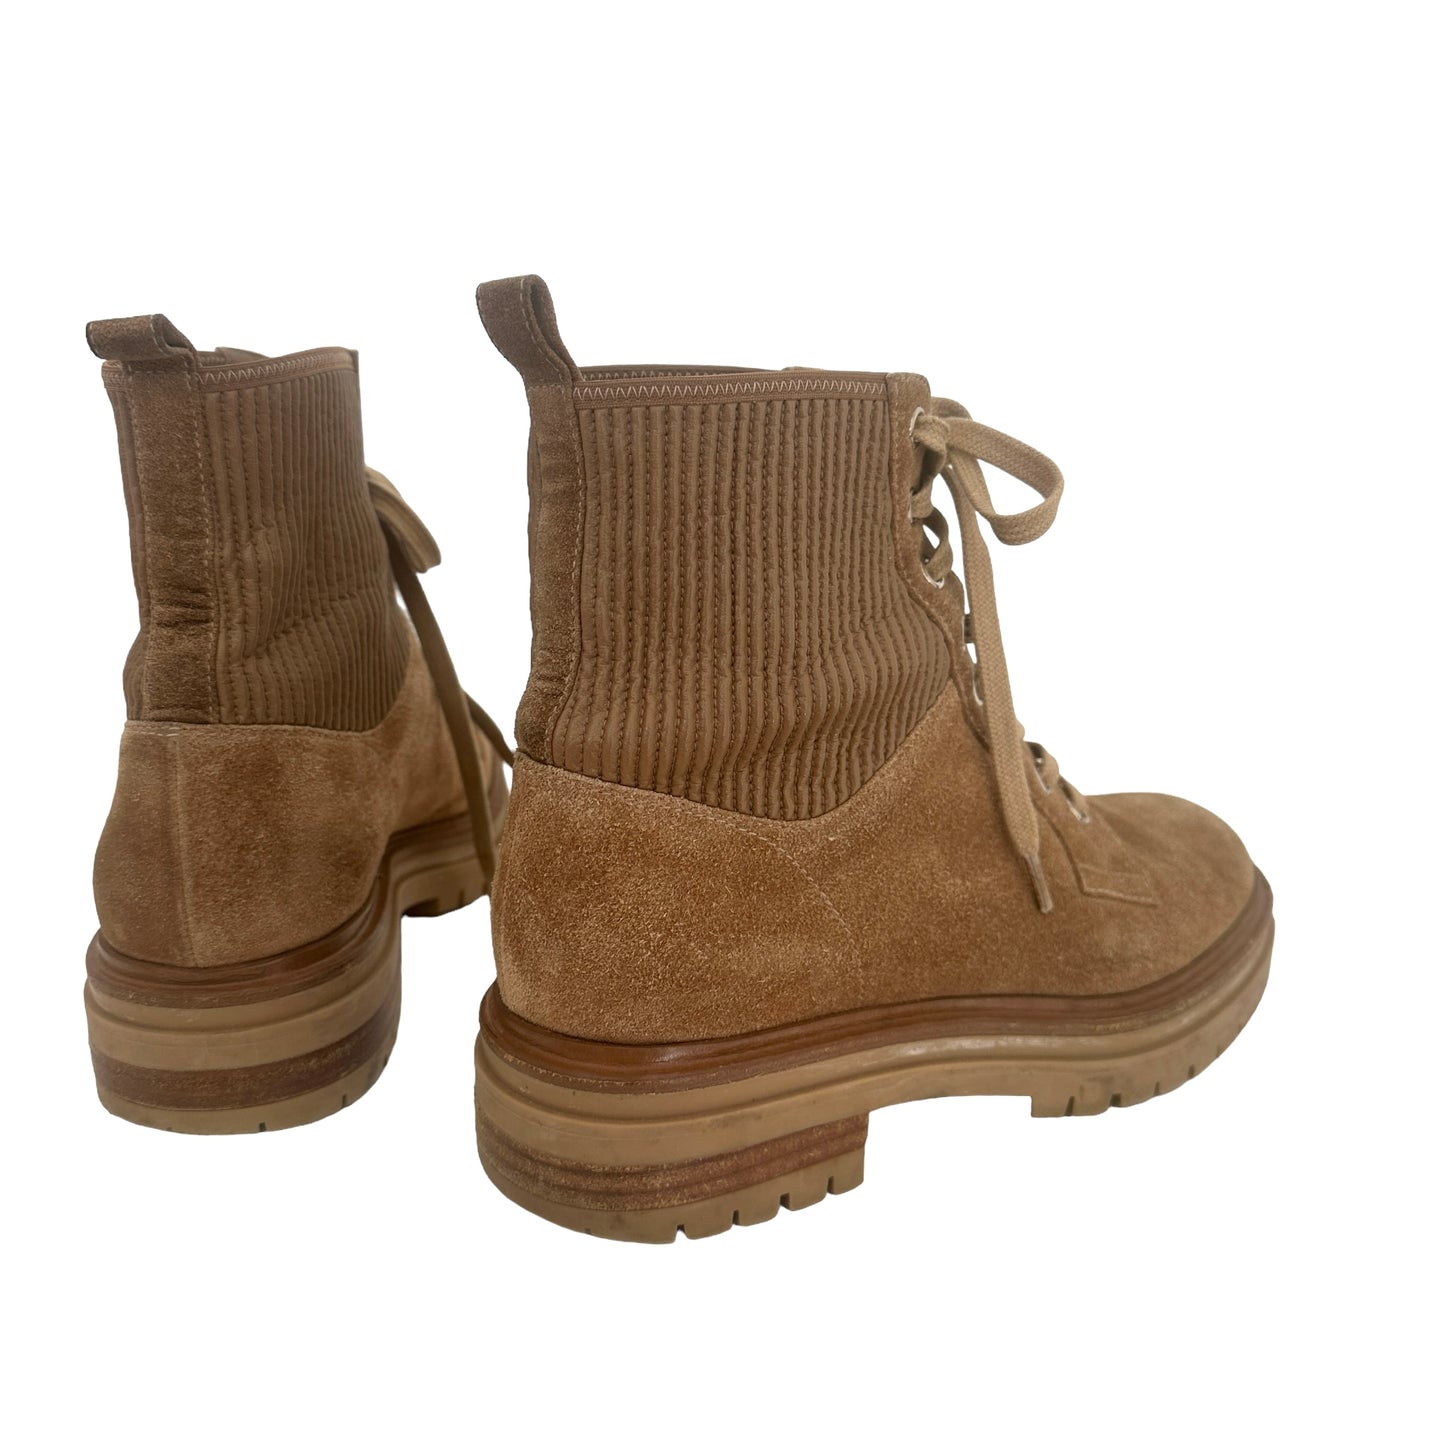 Brown Suede Combat Boots - 7.5